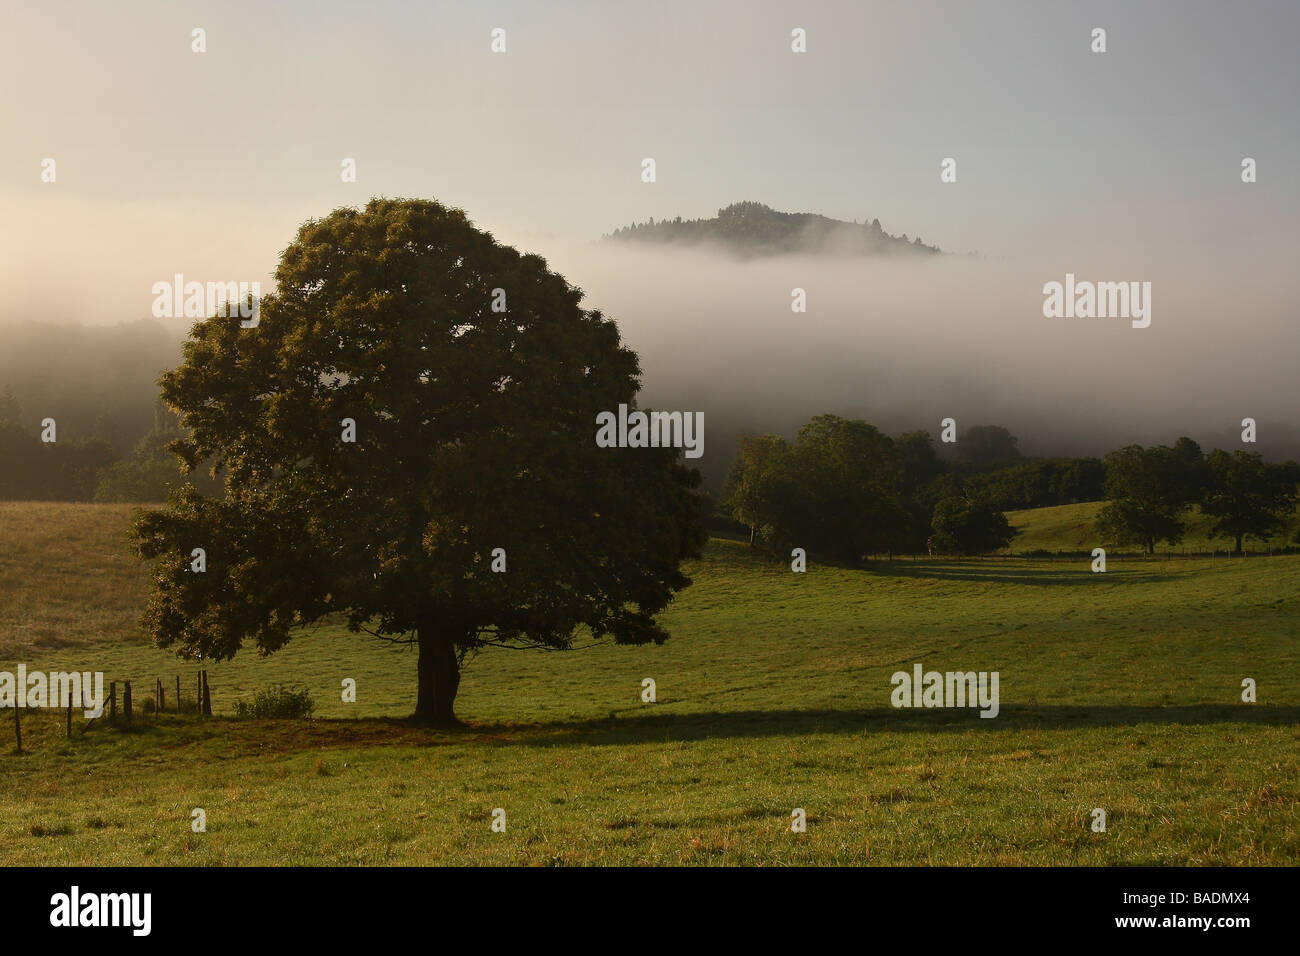 Vista sobre un campo al amanecer, una larga sombra que se ejecuta desde un castaño grande en medio de la distancia de la parte superior de una colina aumento ou Foto de stock